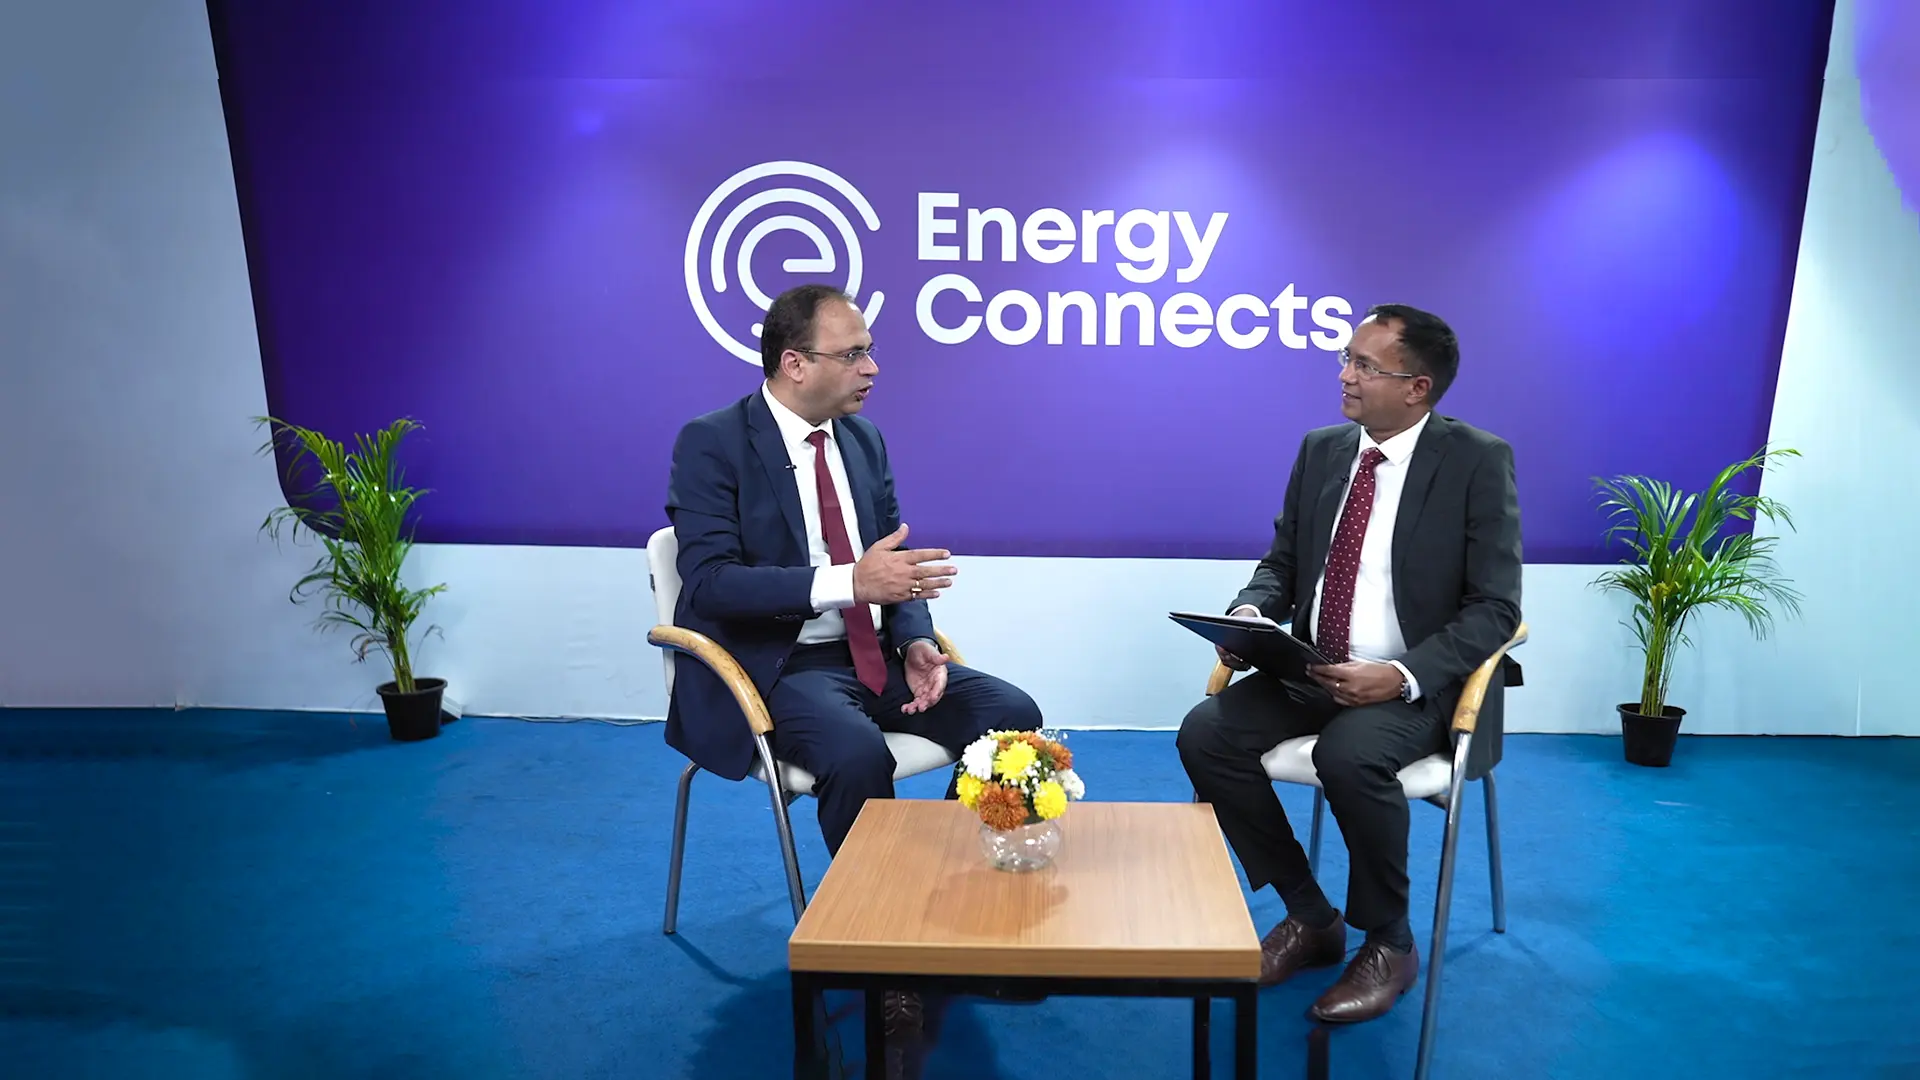 Essar transforming India’s energy landscape